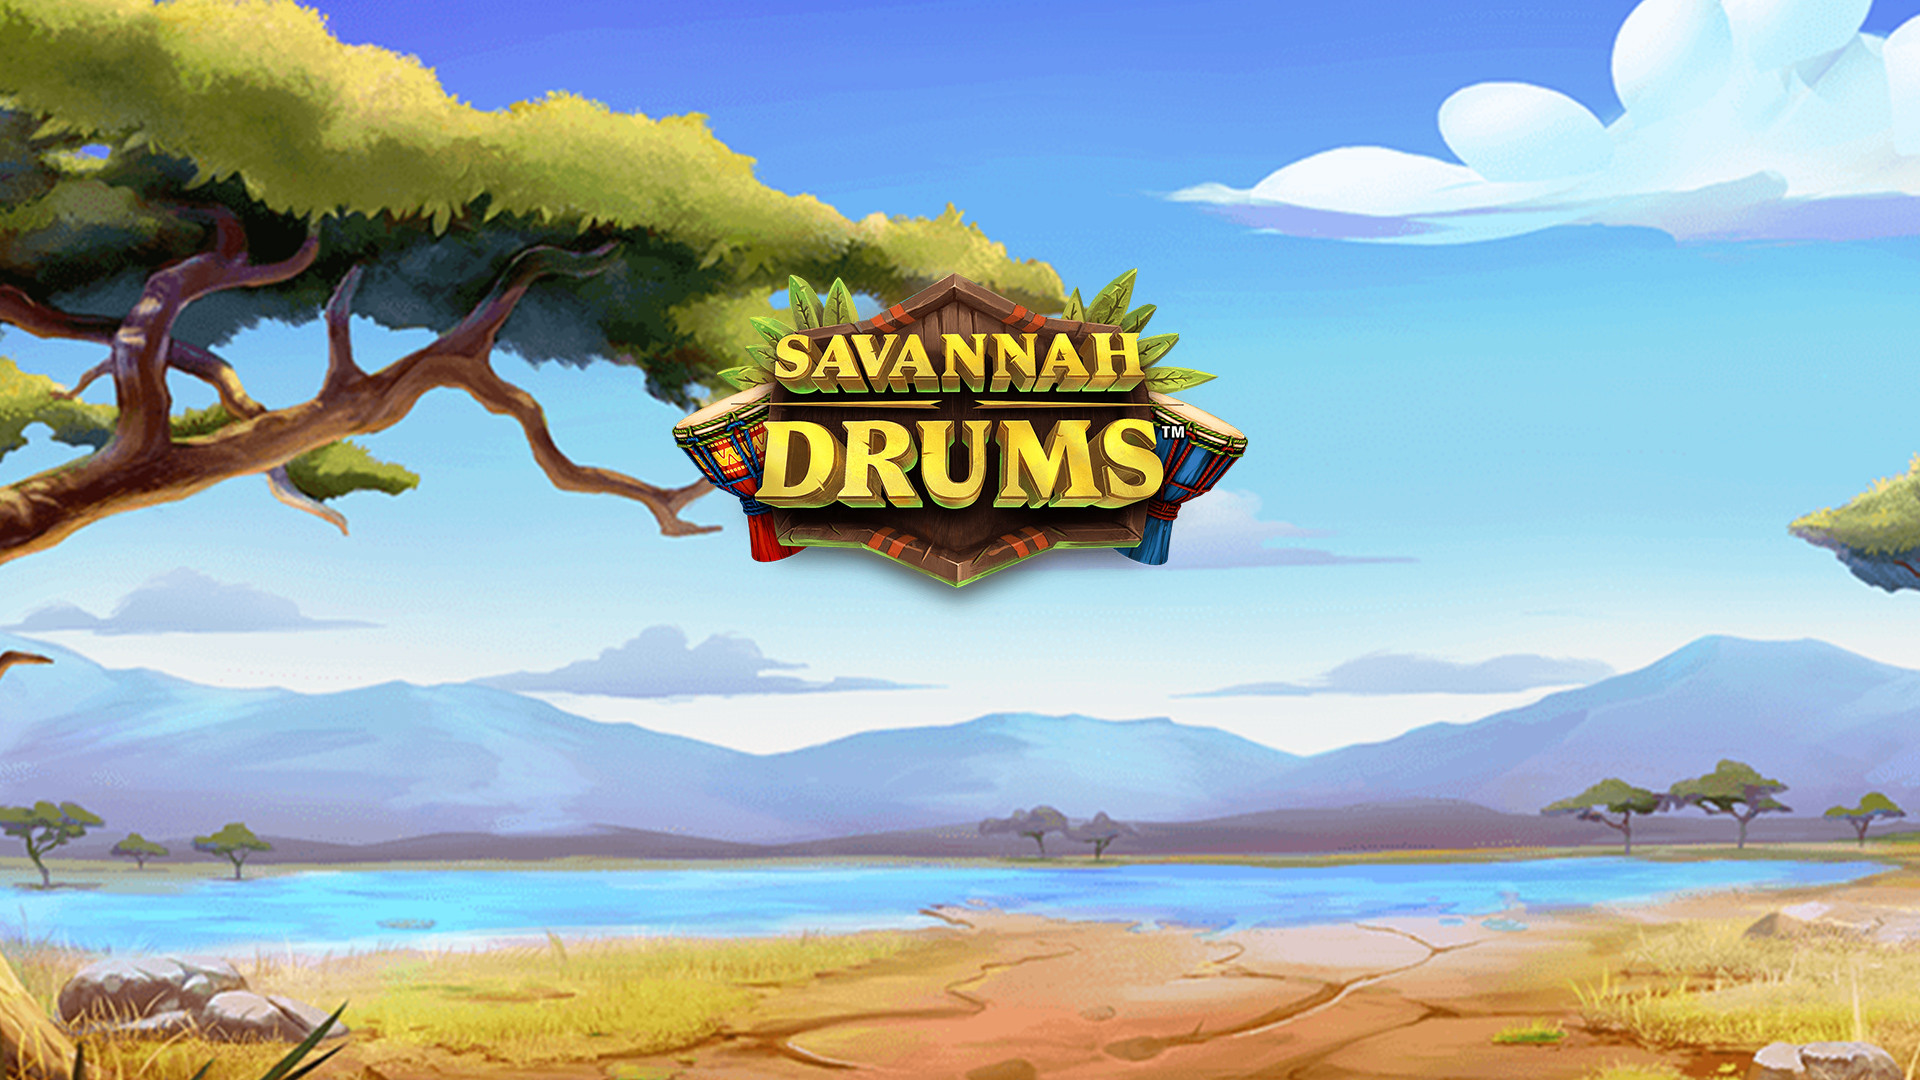 Savannah Drums